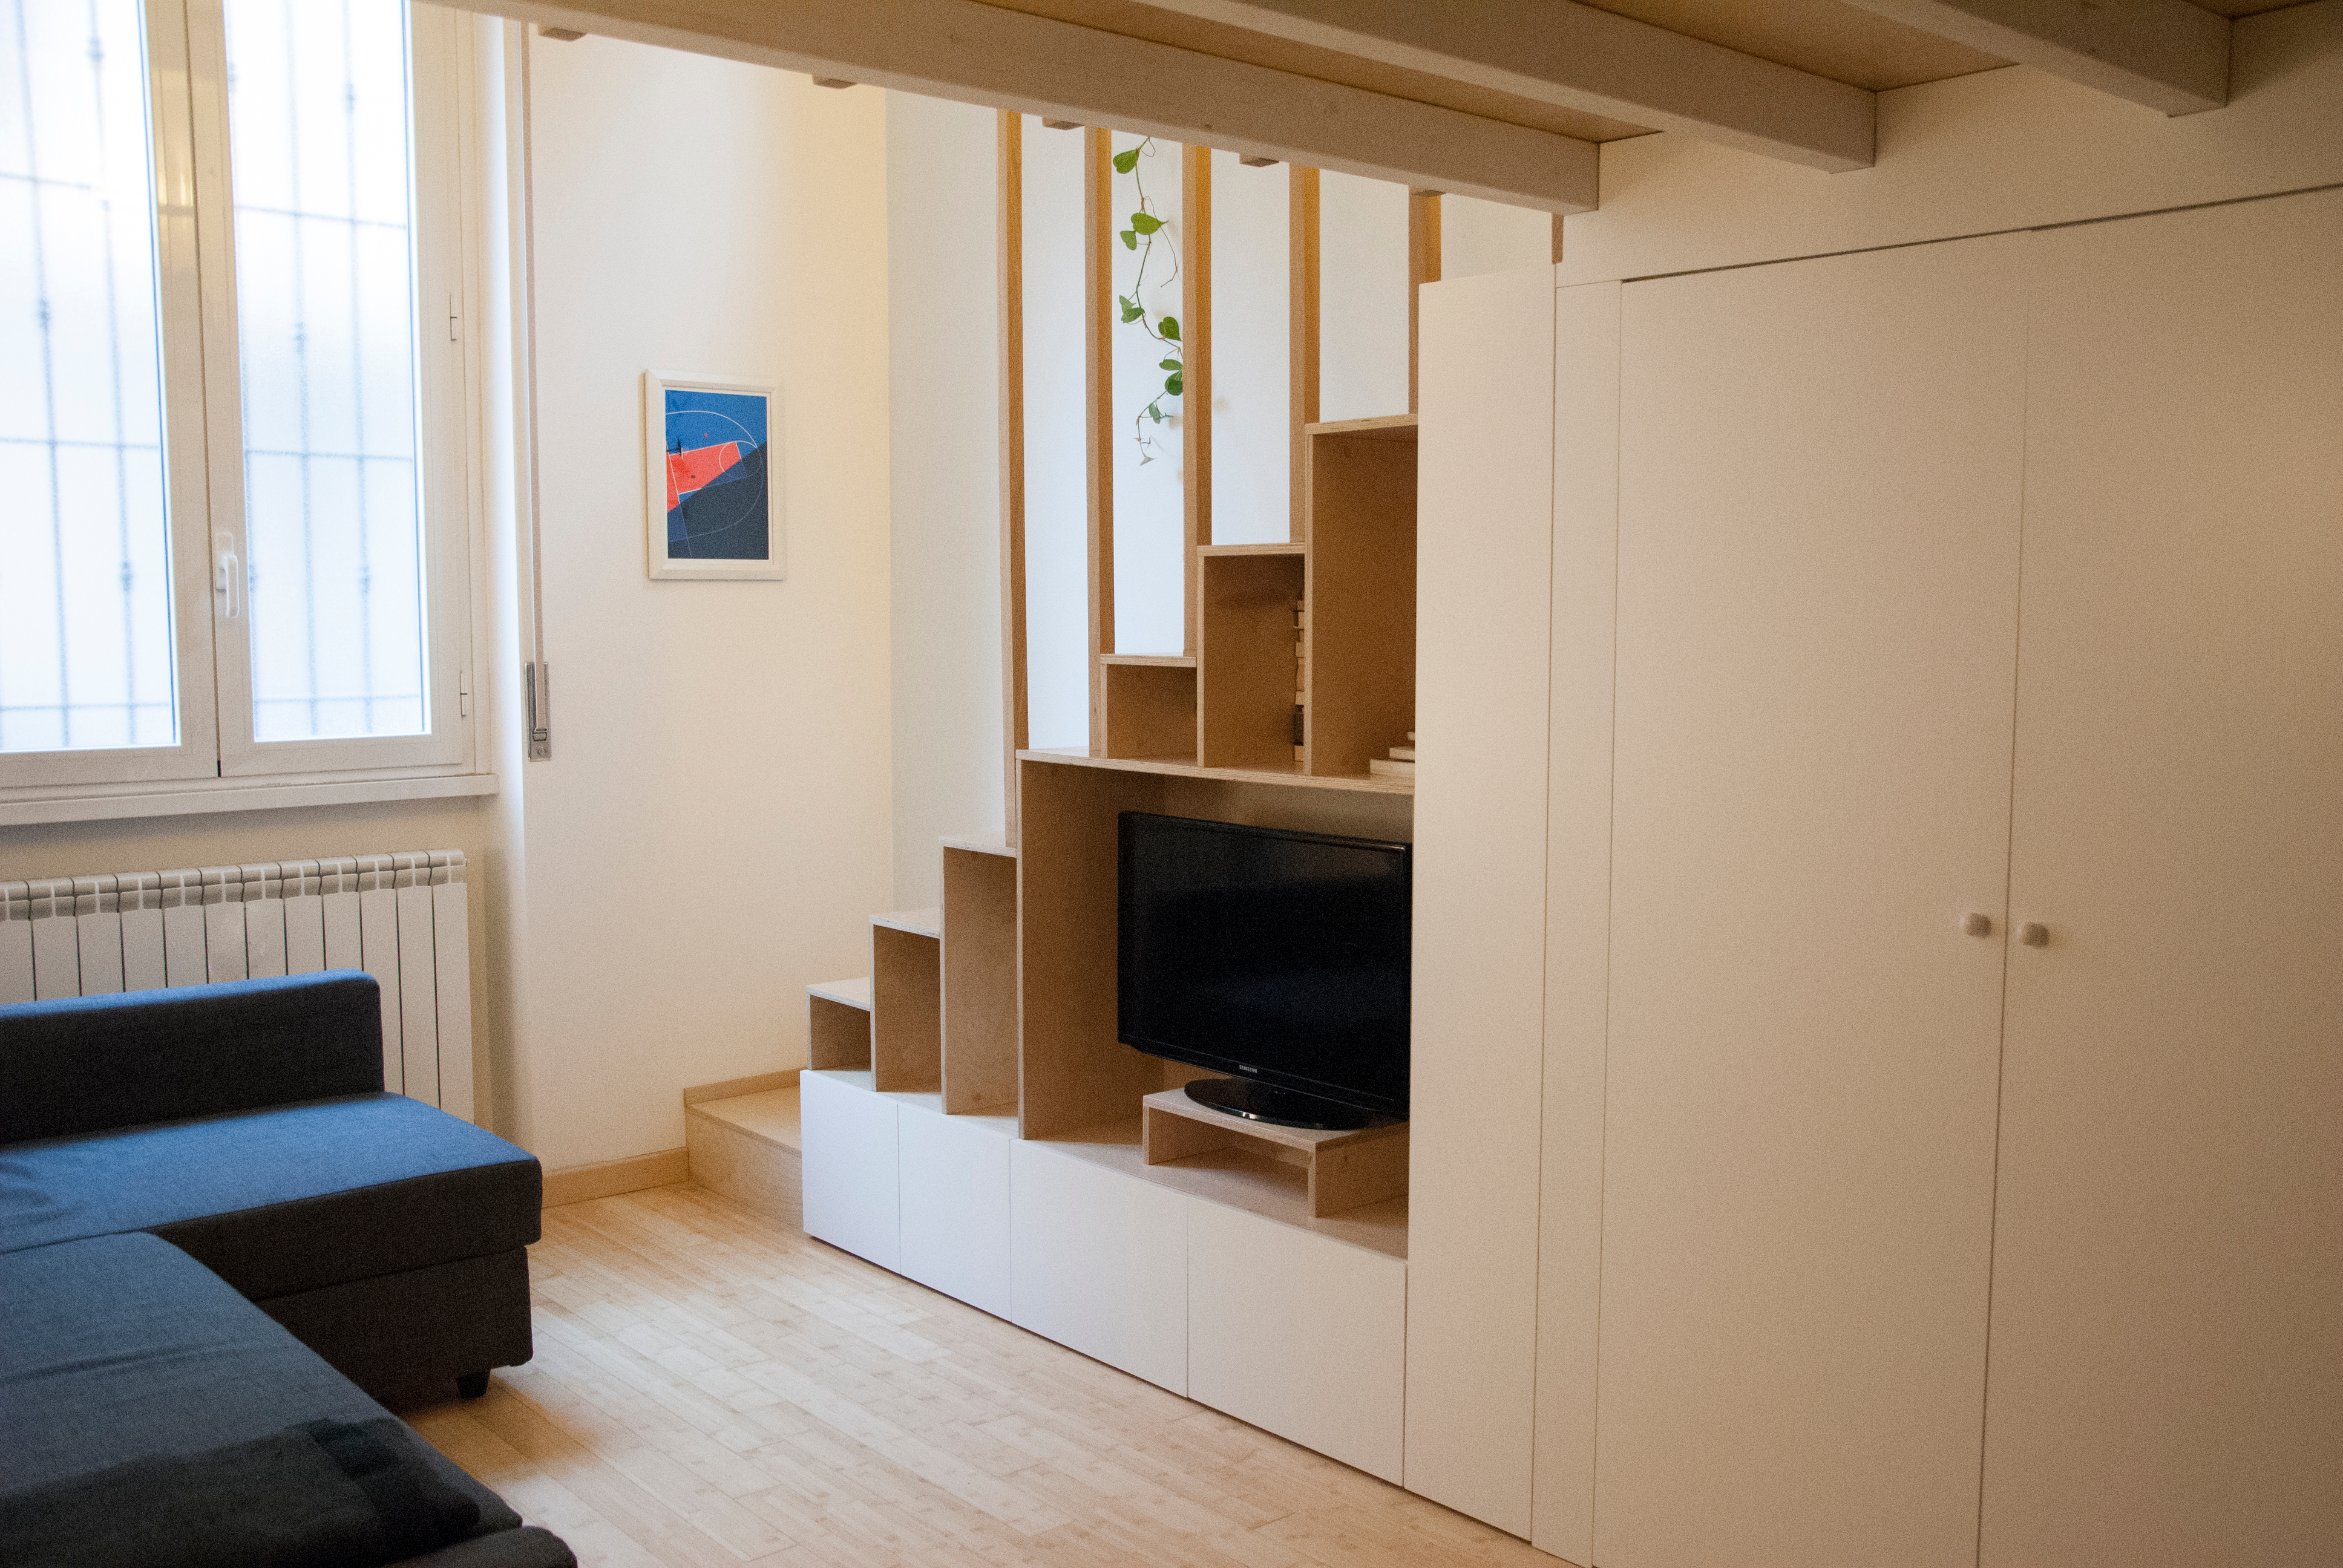 15 Consigli smart e low cost per arredare mini appartamenti